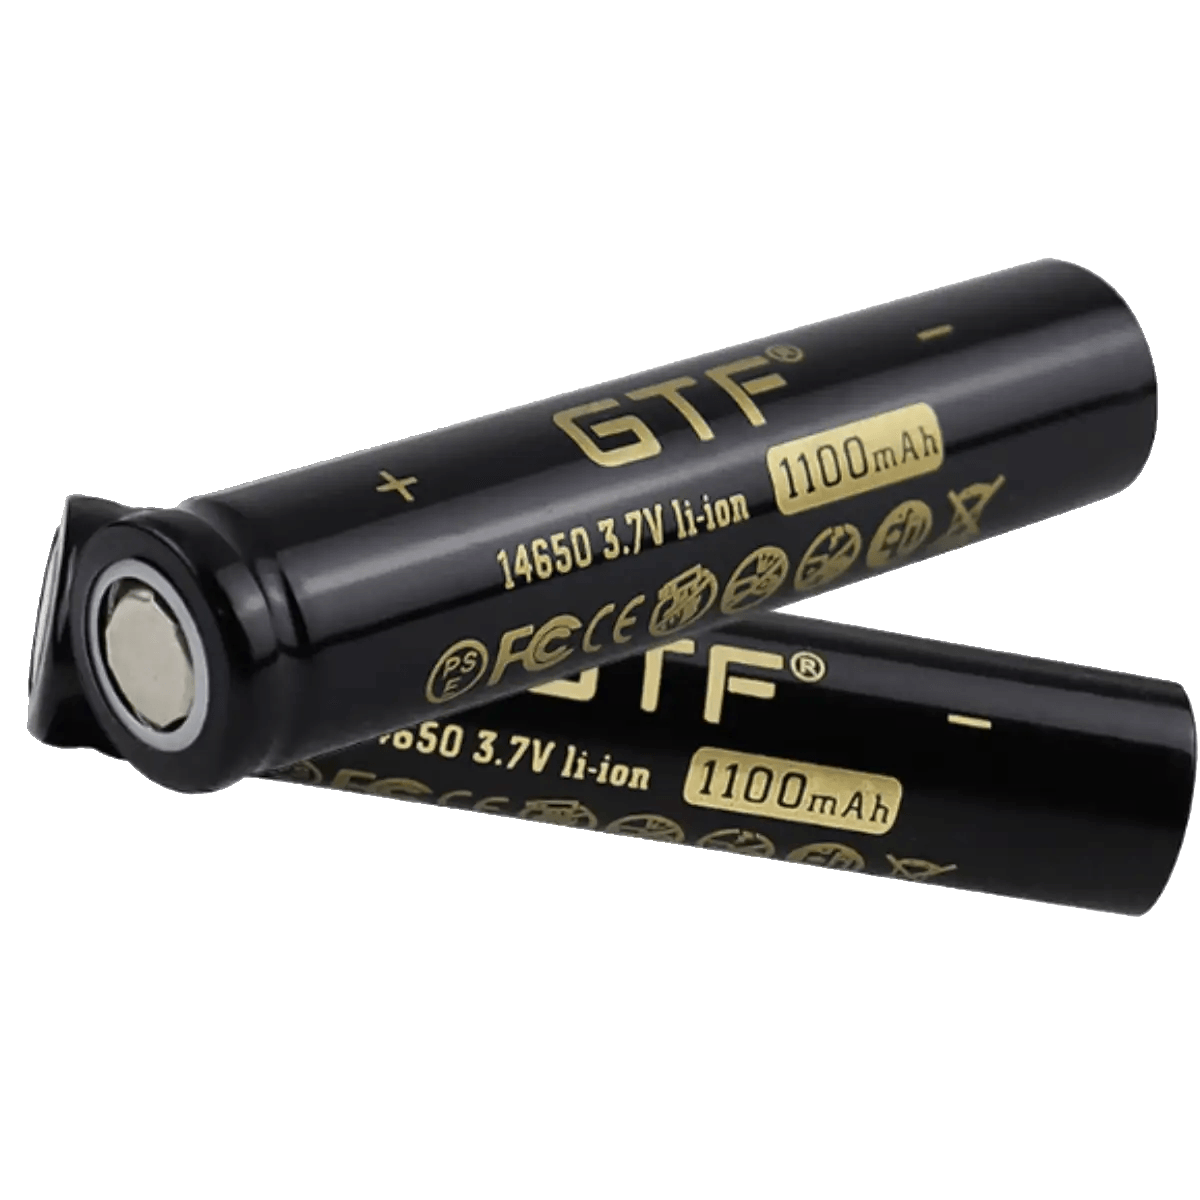 Batterie Lithium-ion 14650 3.7V 1100mAh